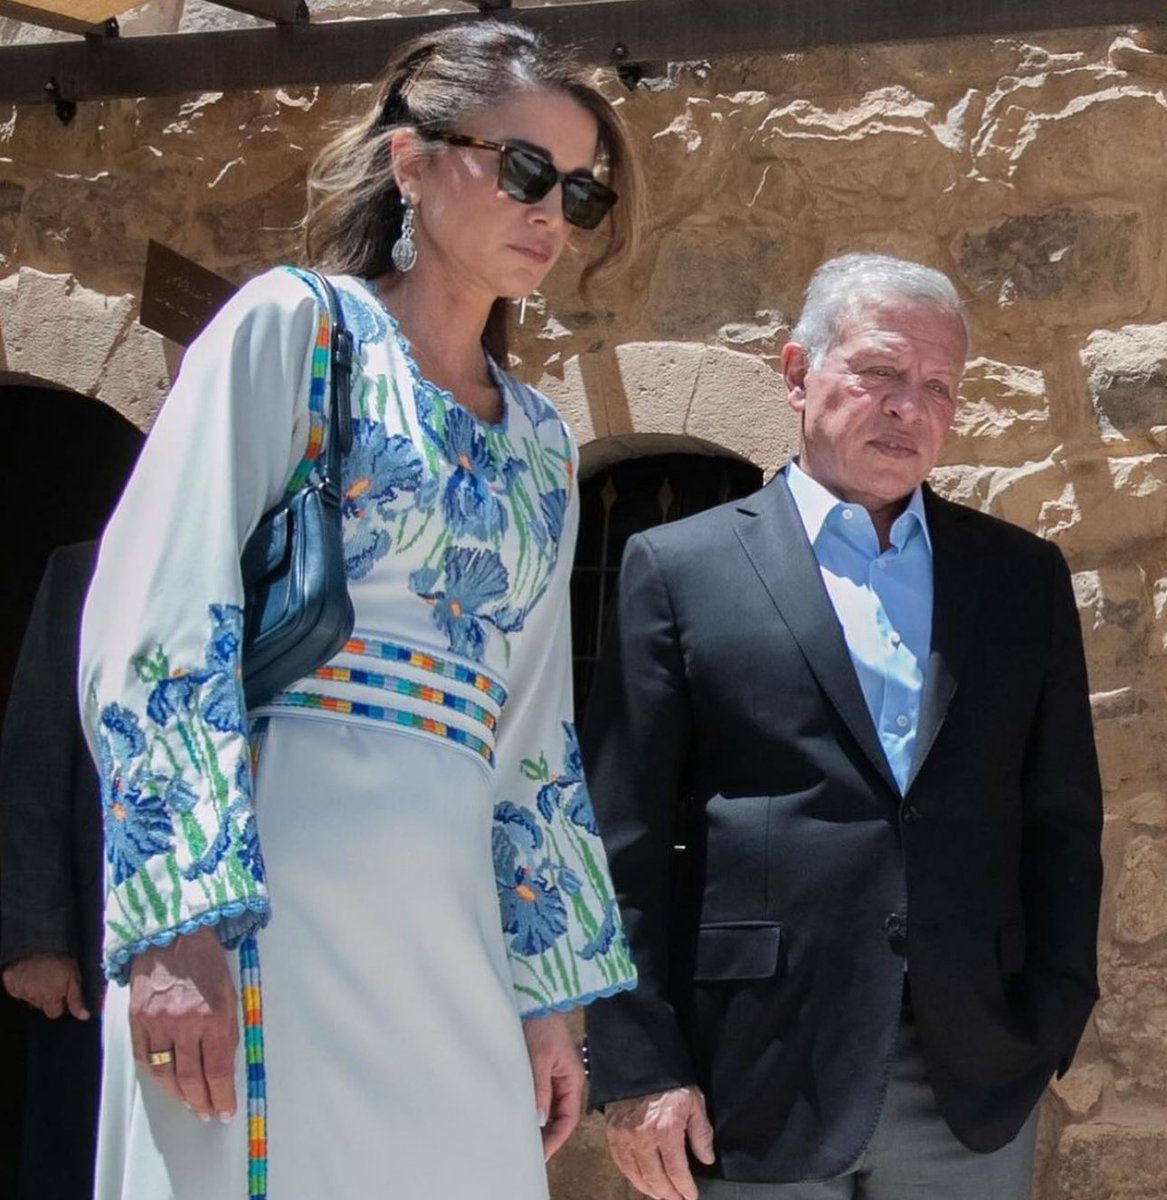 El Rey Abdullah II, acompañado por la reina Rania Abdullah, visita el Centro de Visitantes de #Madaba, que destaca la importancia histórica, geográfica y religiosa del lugar. 

La Reina en el día de hoy tenía un rostro muy serio.